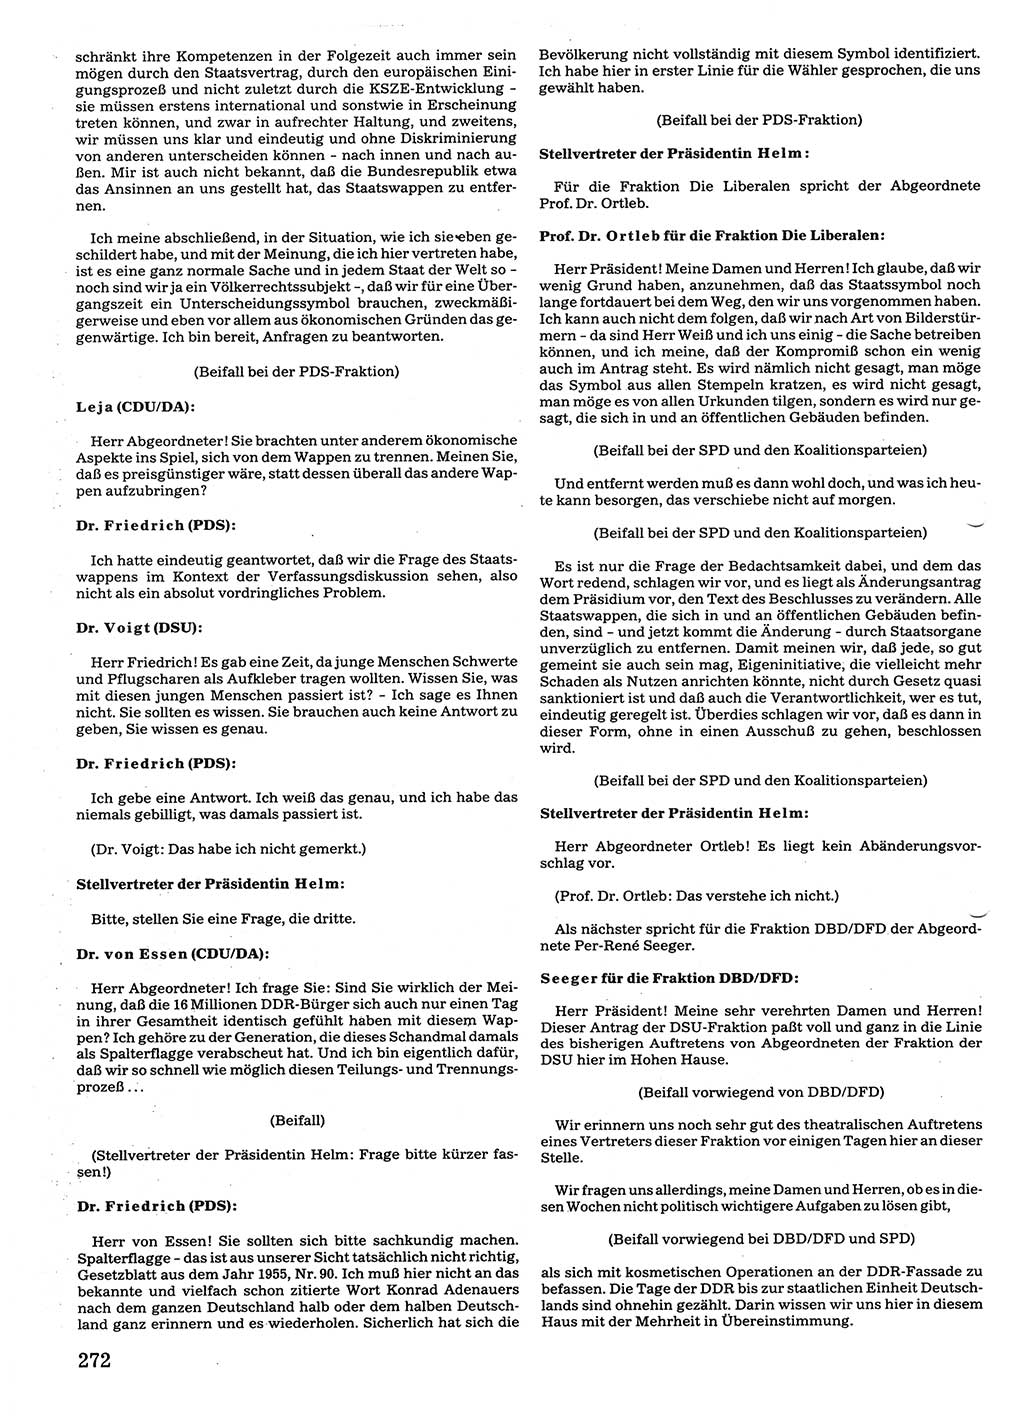 Tagungen der Volkskammer (VK) der Deutschen Demokratischen Republik (DDR), 10. Wahlperiode 1990, Seite 272 (VK. DDR 10. WP. 1990, Prot. Tg. 1-38, 5.4.-2.10.1990, S. 272)